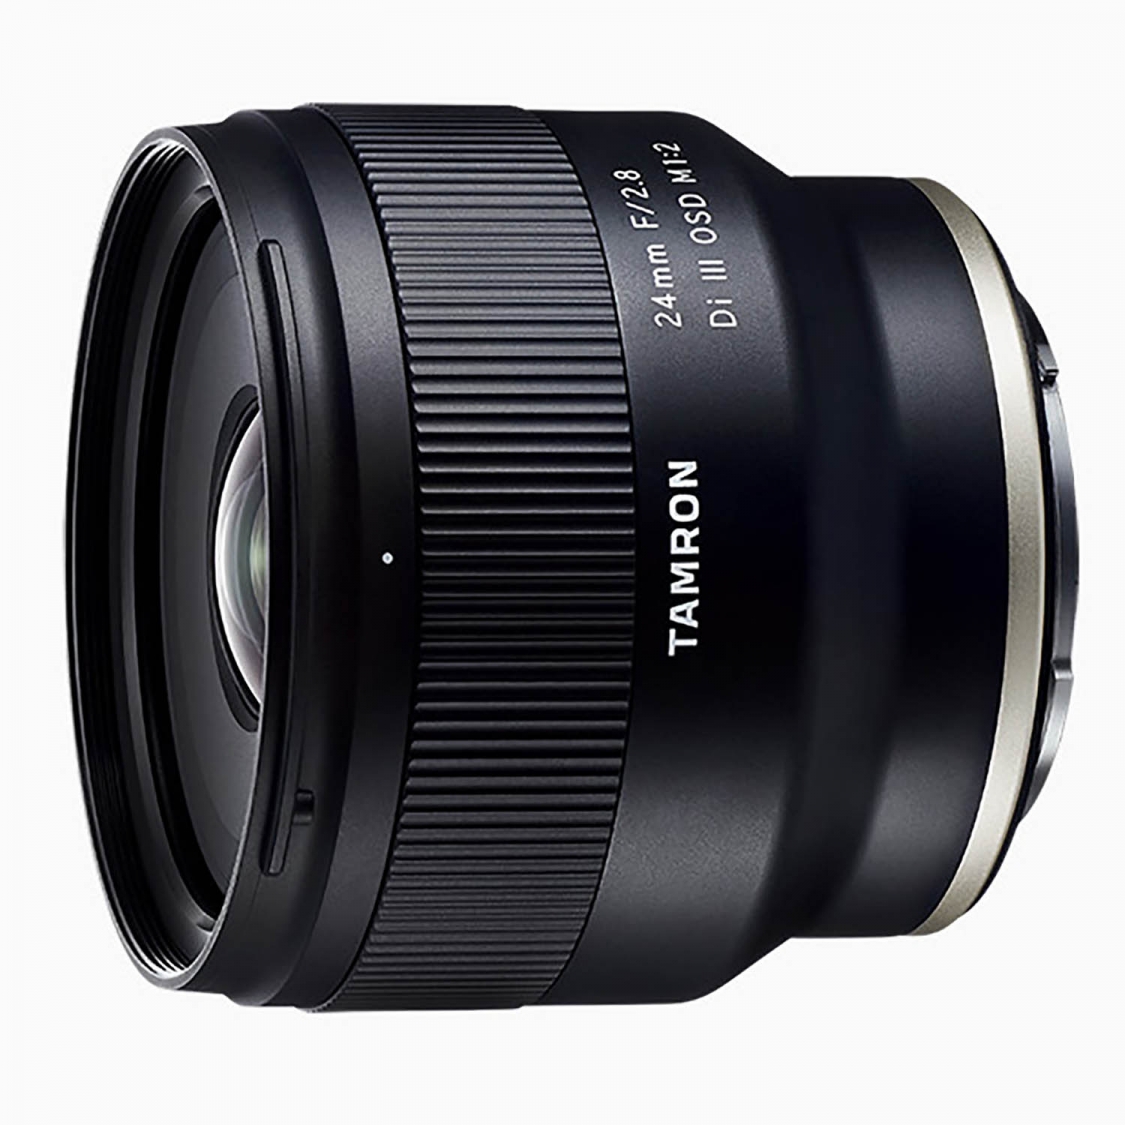 Tamron 24mm f2.8 DI III OSD Macro 1:2 Lens (Sony E-mount)